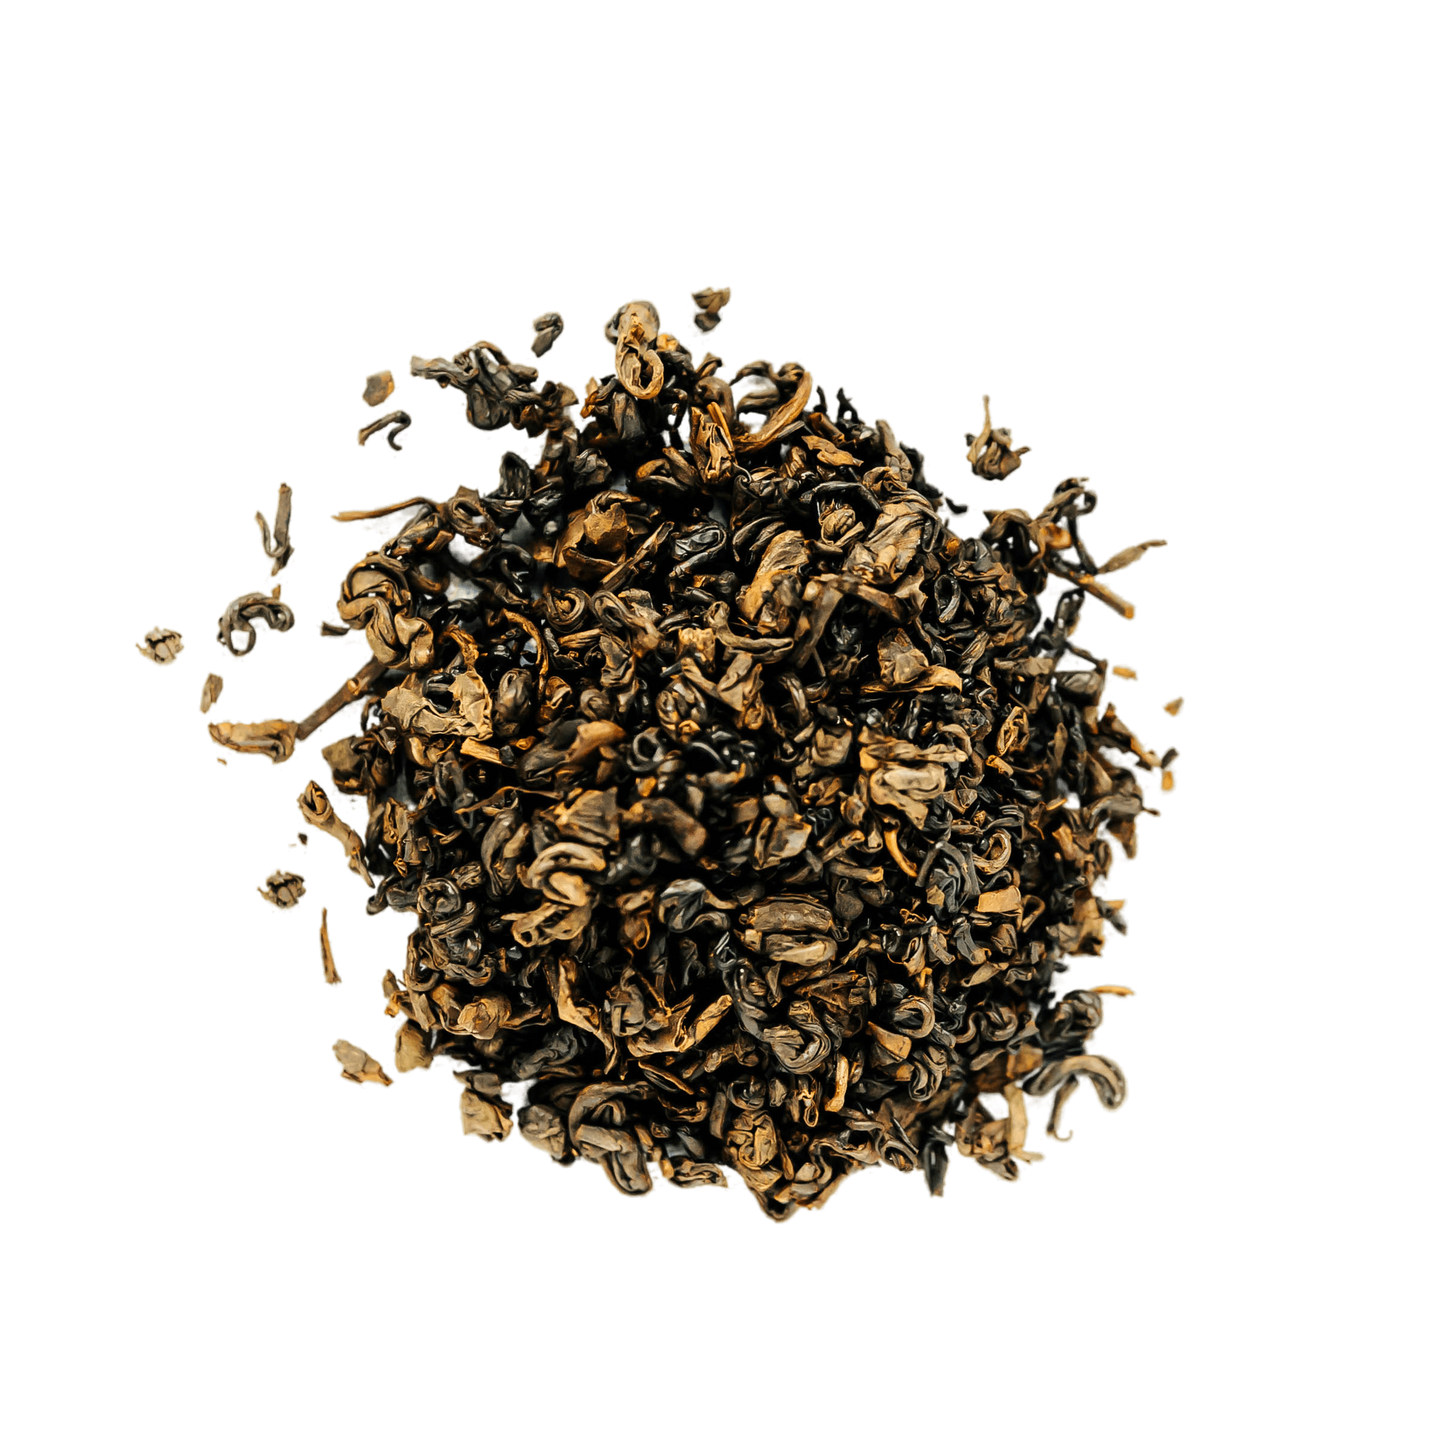 Black Pearl Gunpowder Black Tea Loose Leaf Tea leaves sit on a white surface